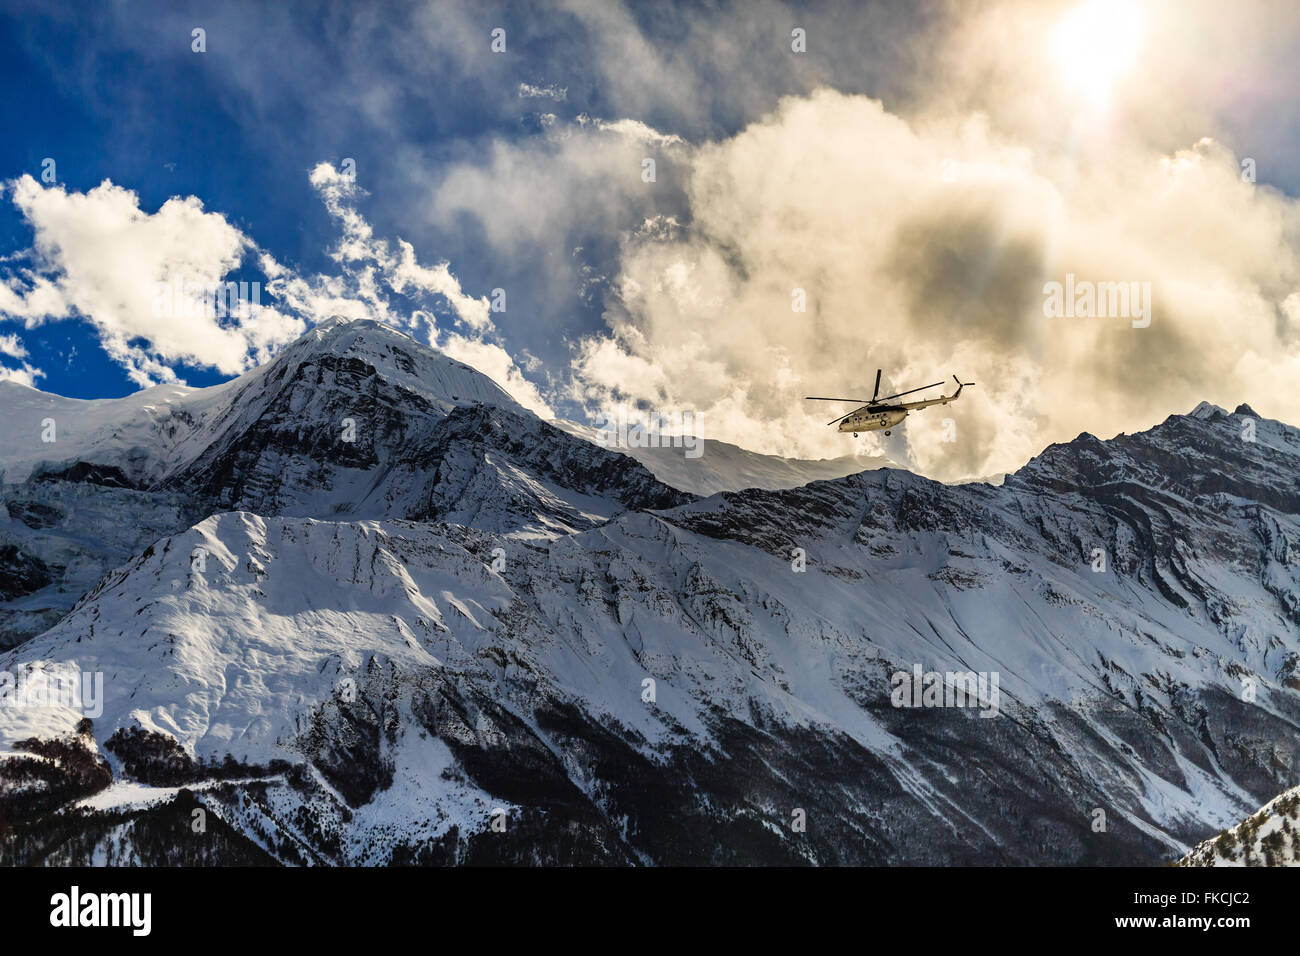 Hélicoptère de sauvetage en montagne Himalaya sur fond de l'ANNAPURNA HIMAL ridge. Sauvetage spectaculaire action dans win blanc Banque D'Images